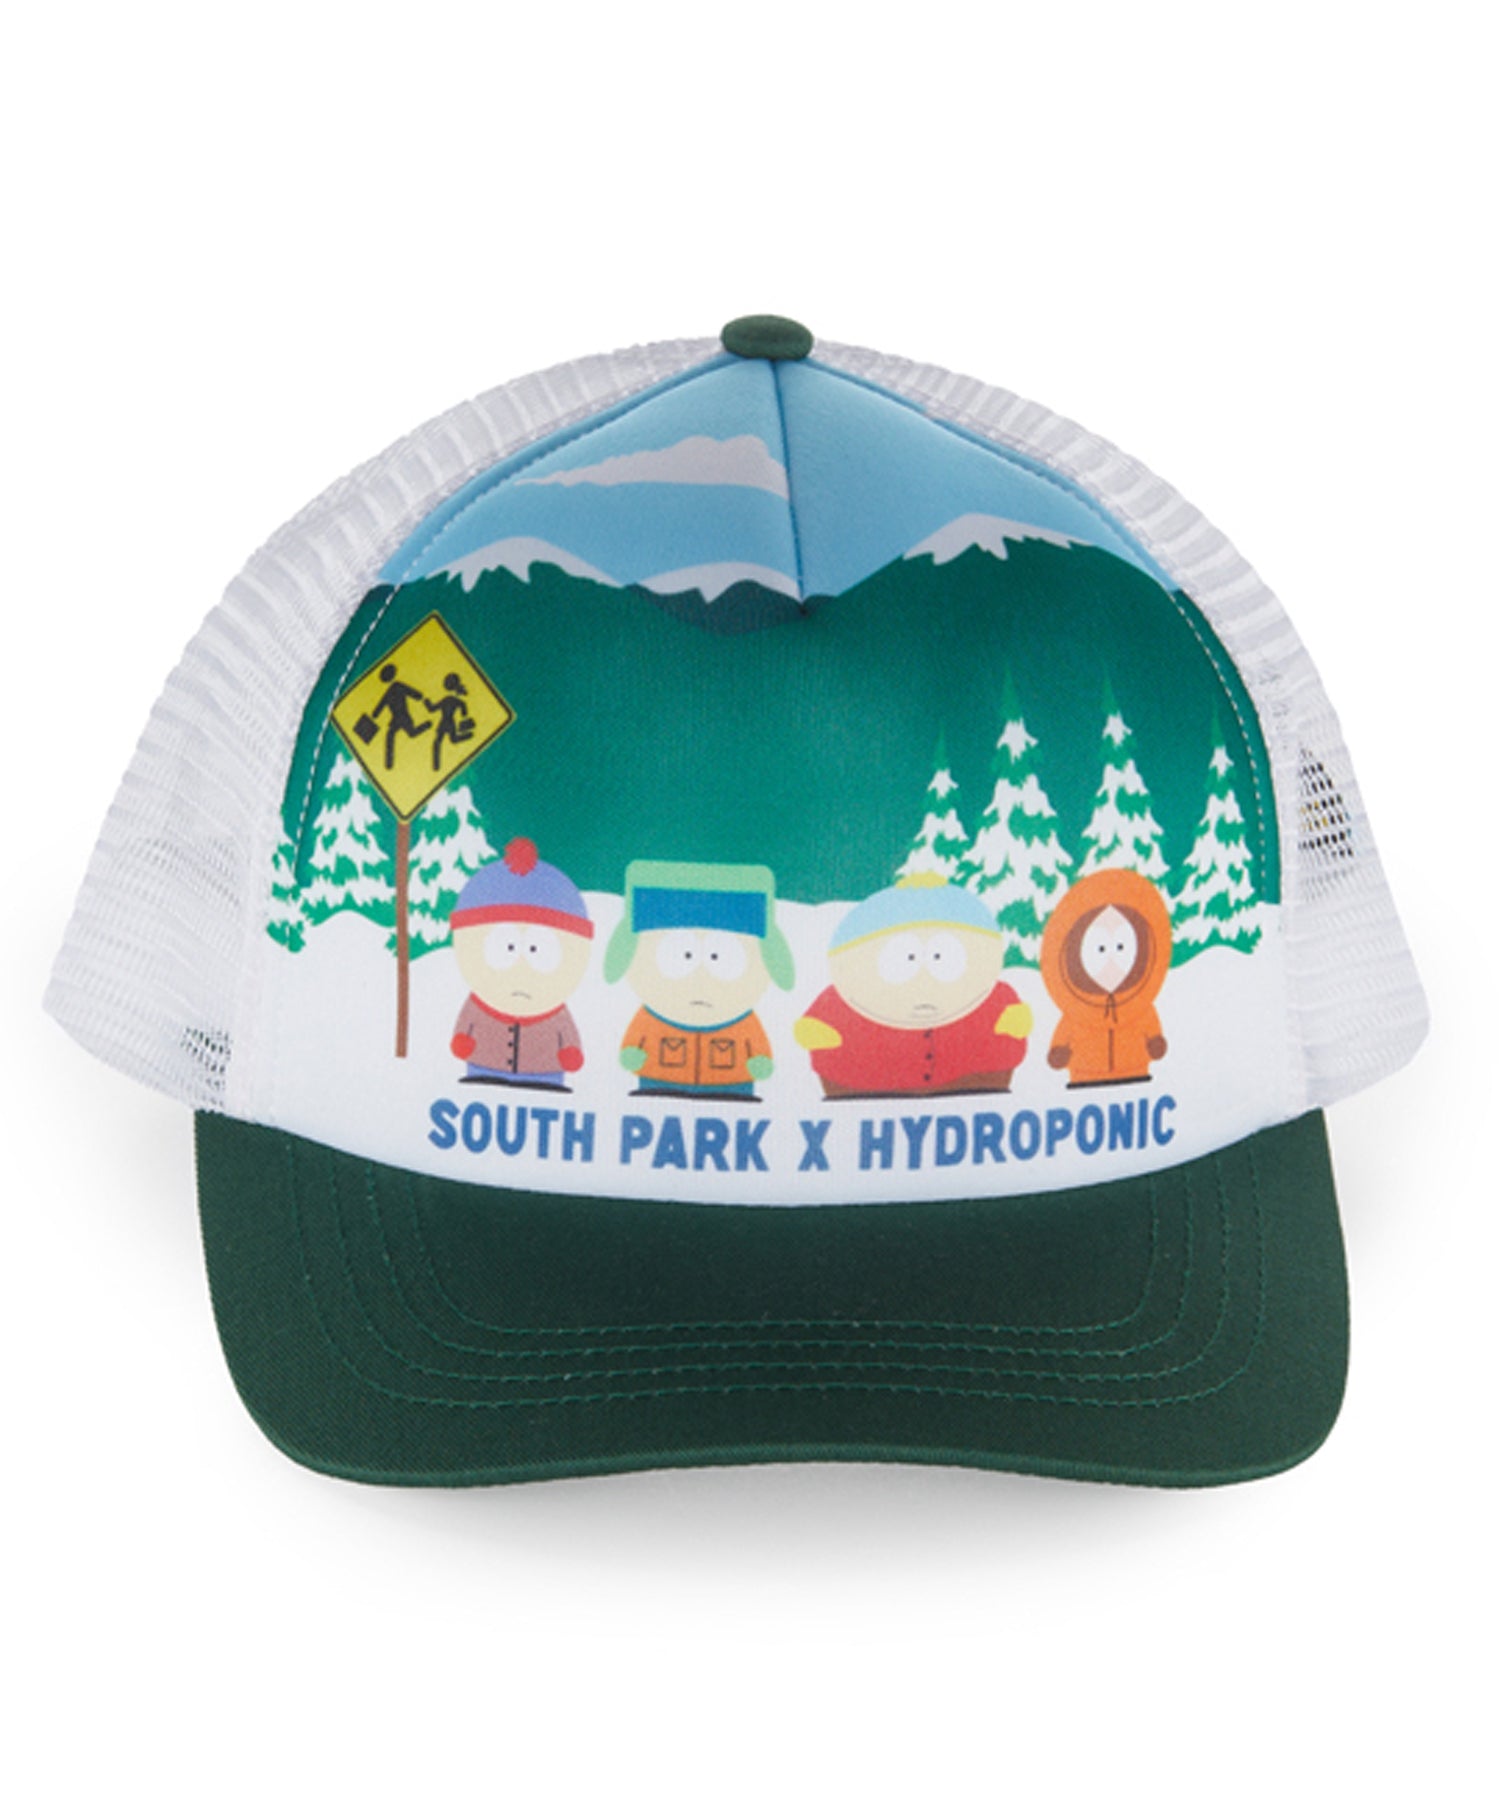 hydroponic-gorra-south-park-bus-stop-green-white-Gorra snapback de 5 paneles-colaboración oficial de South Park X Hydroponic-color blanco-logo south park